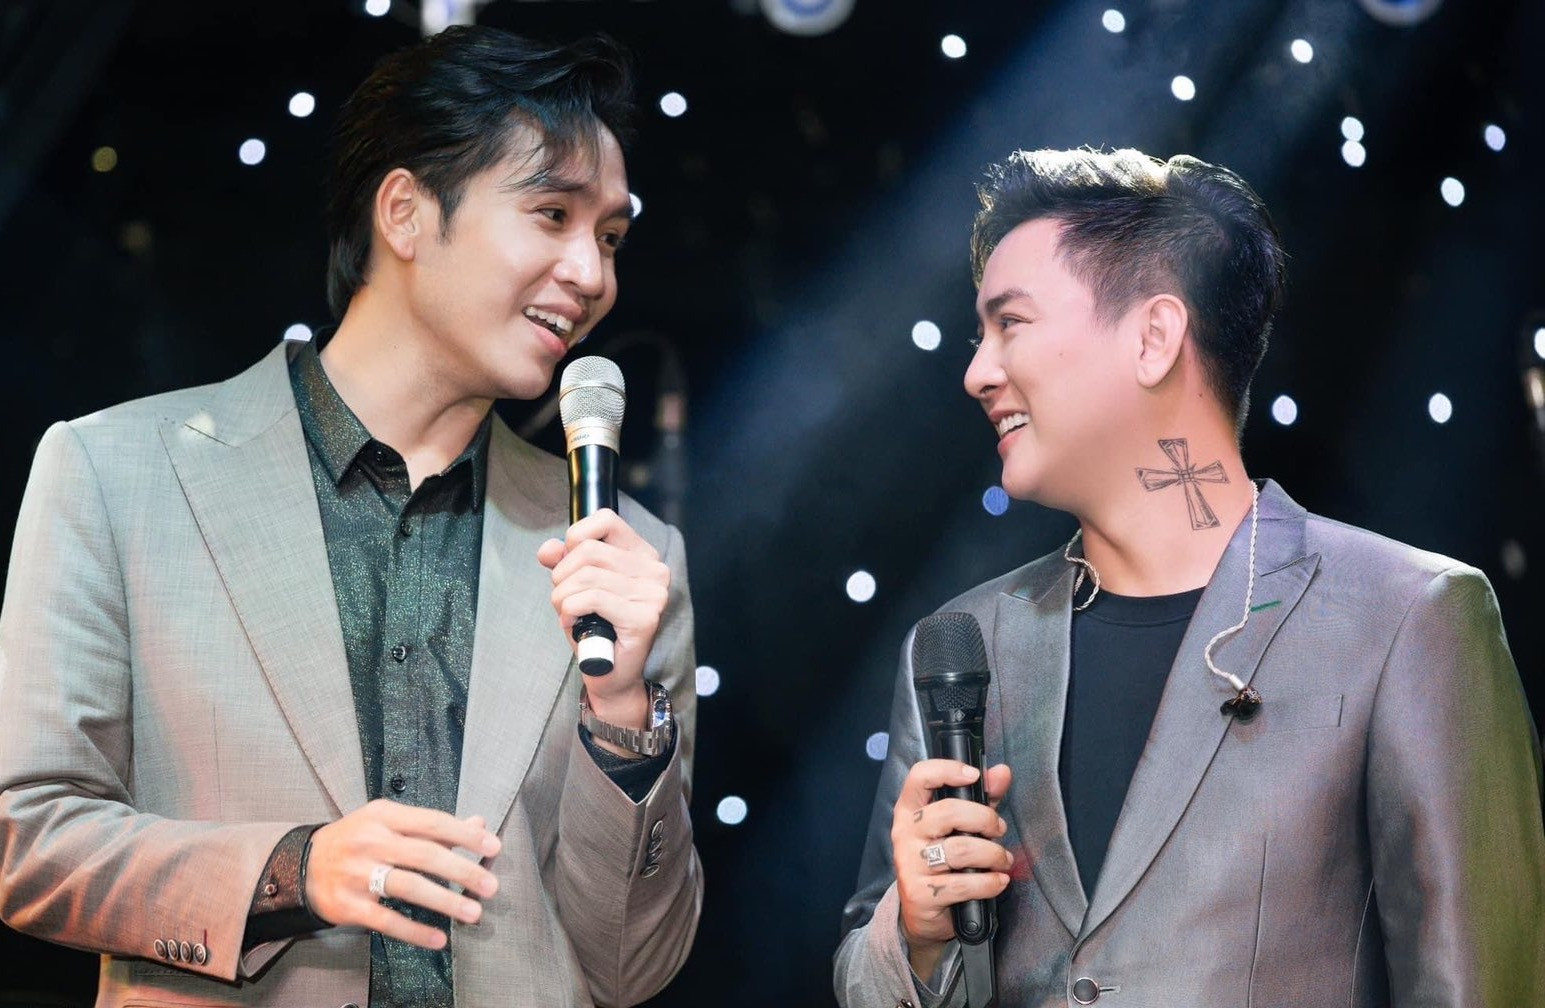 Hoài Lâm hát tác phẩm của Hoài Linh trong liveshow ở Hà Nội